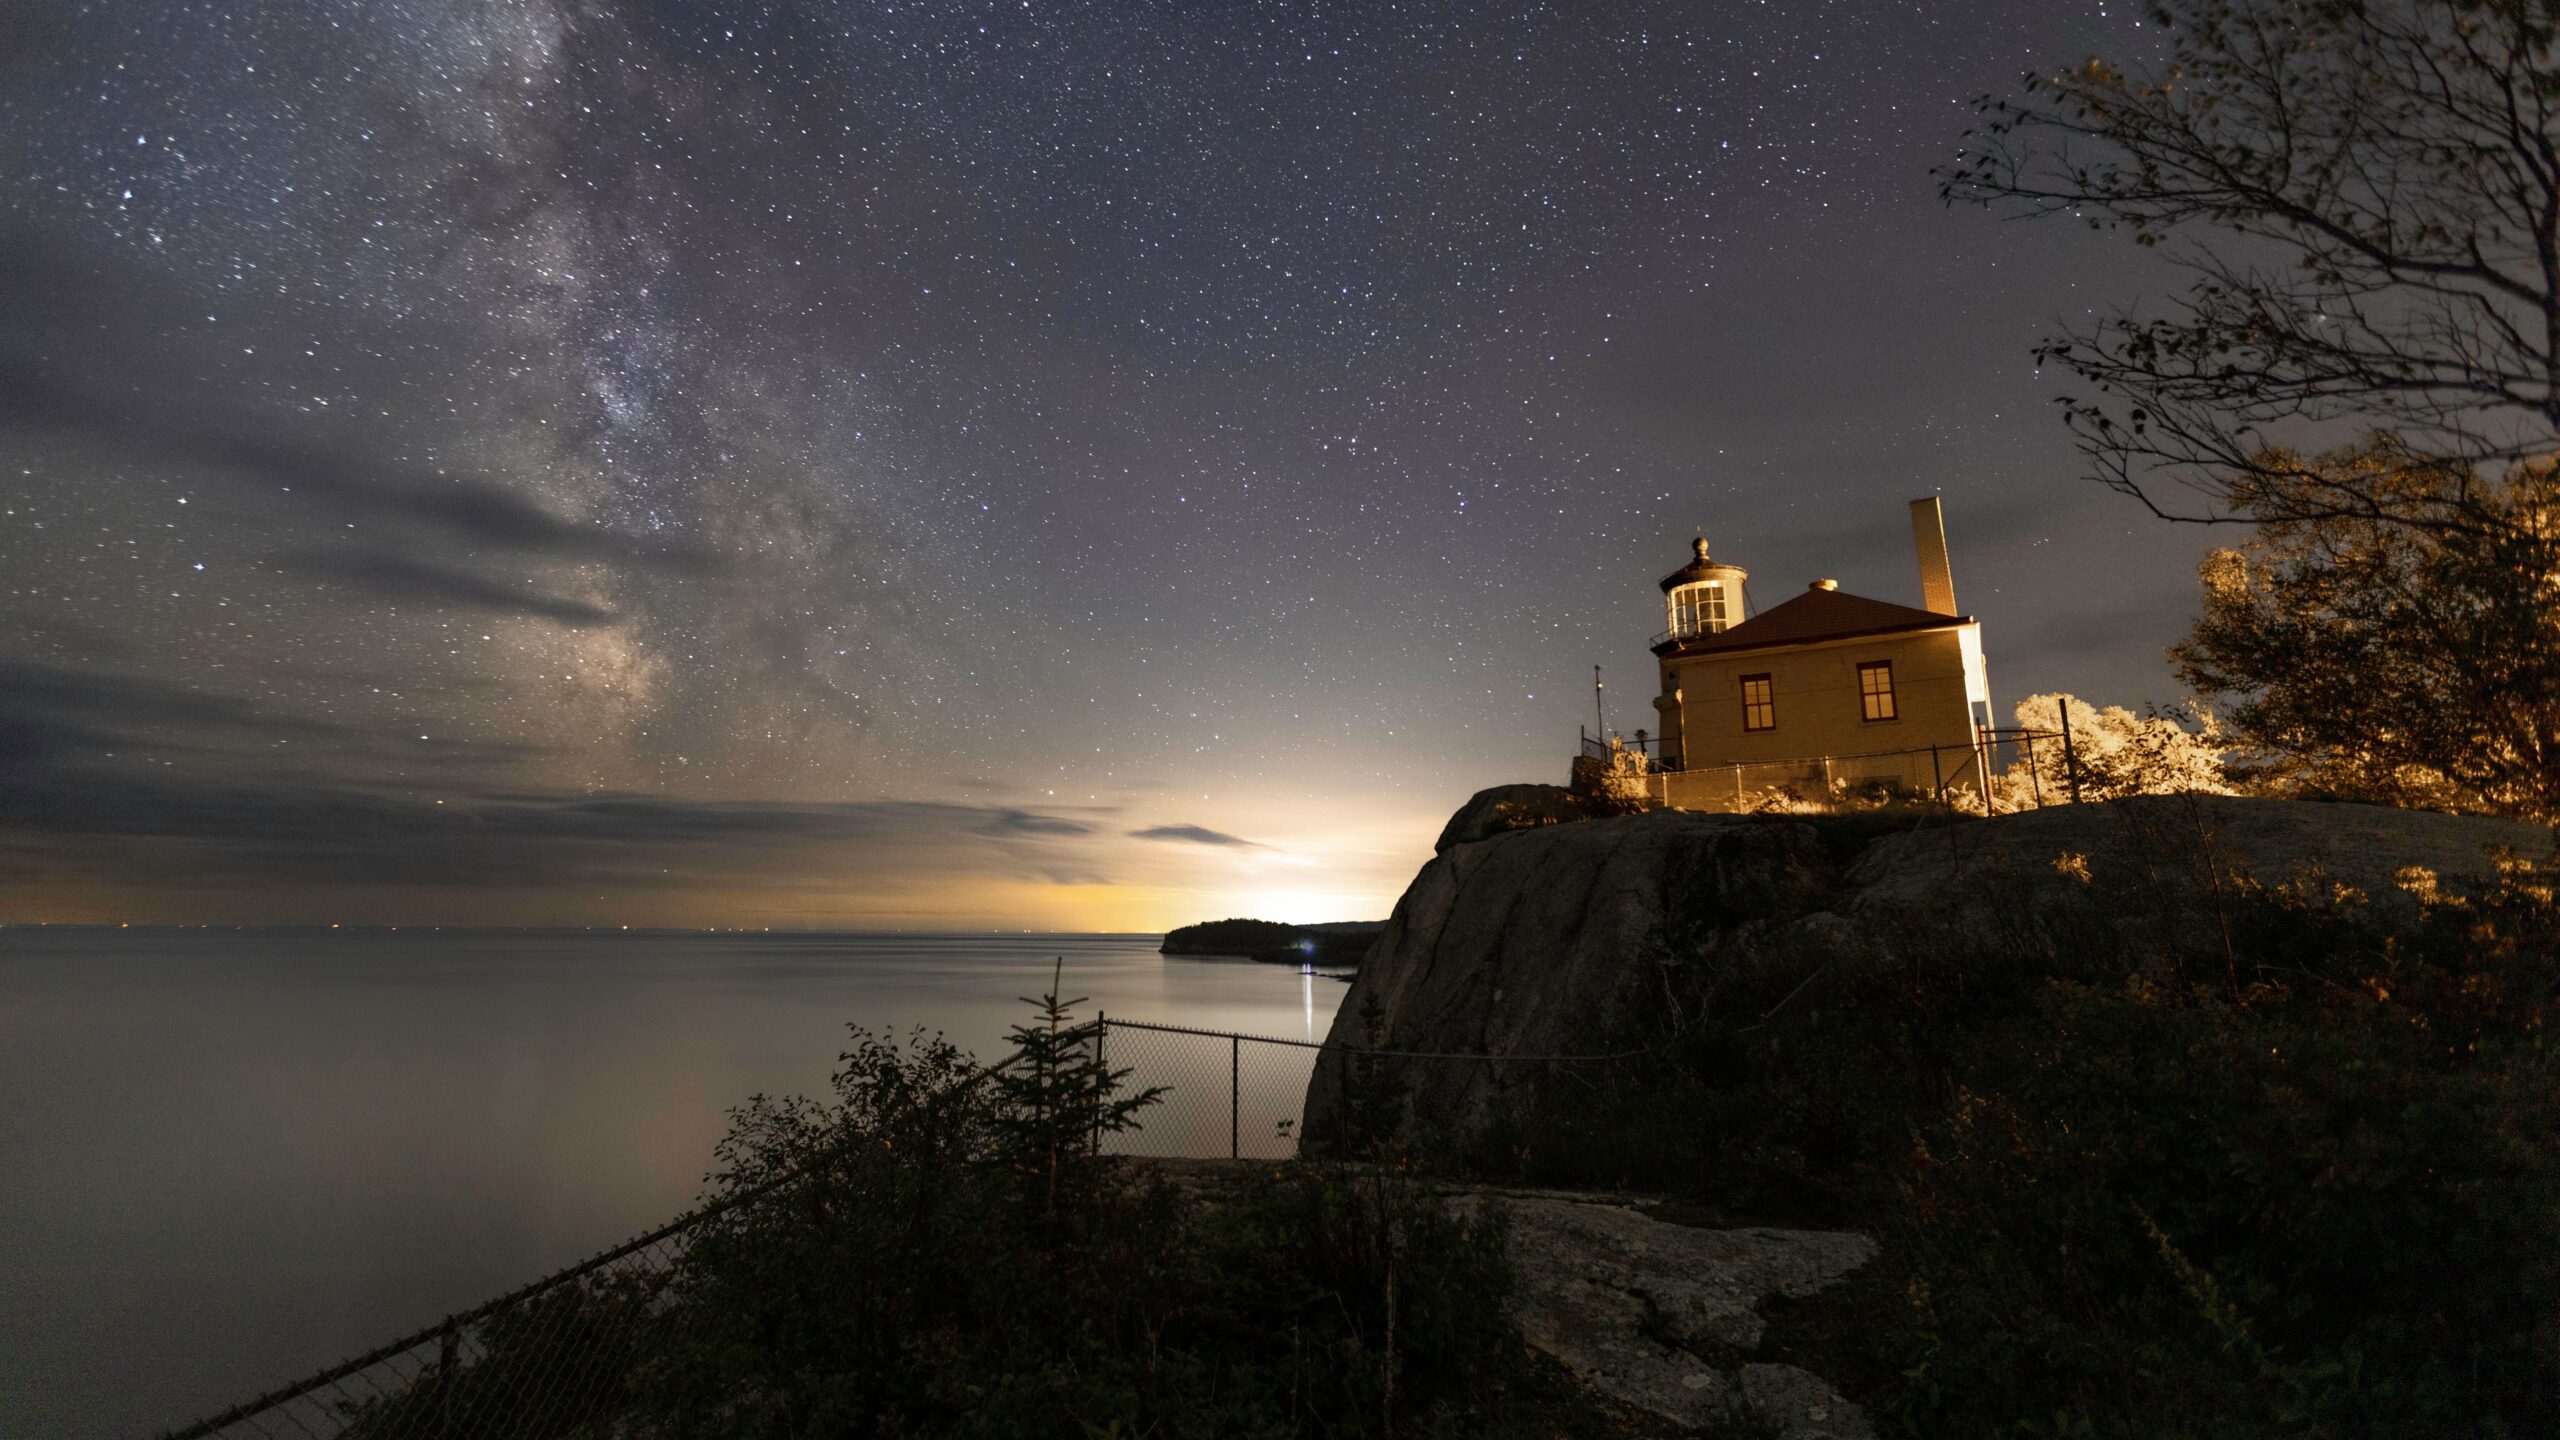 The Milky Way above Split Rock Lighthouse